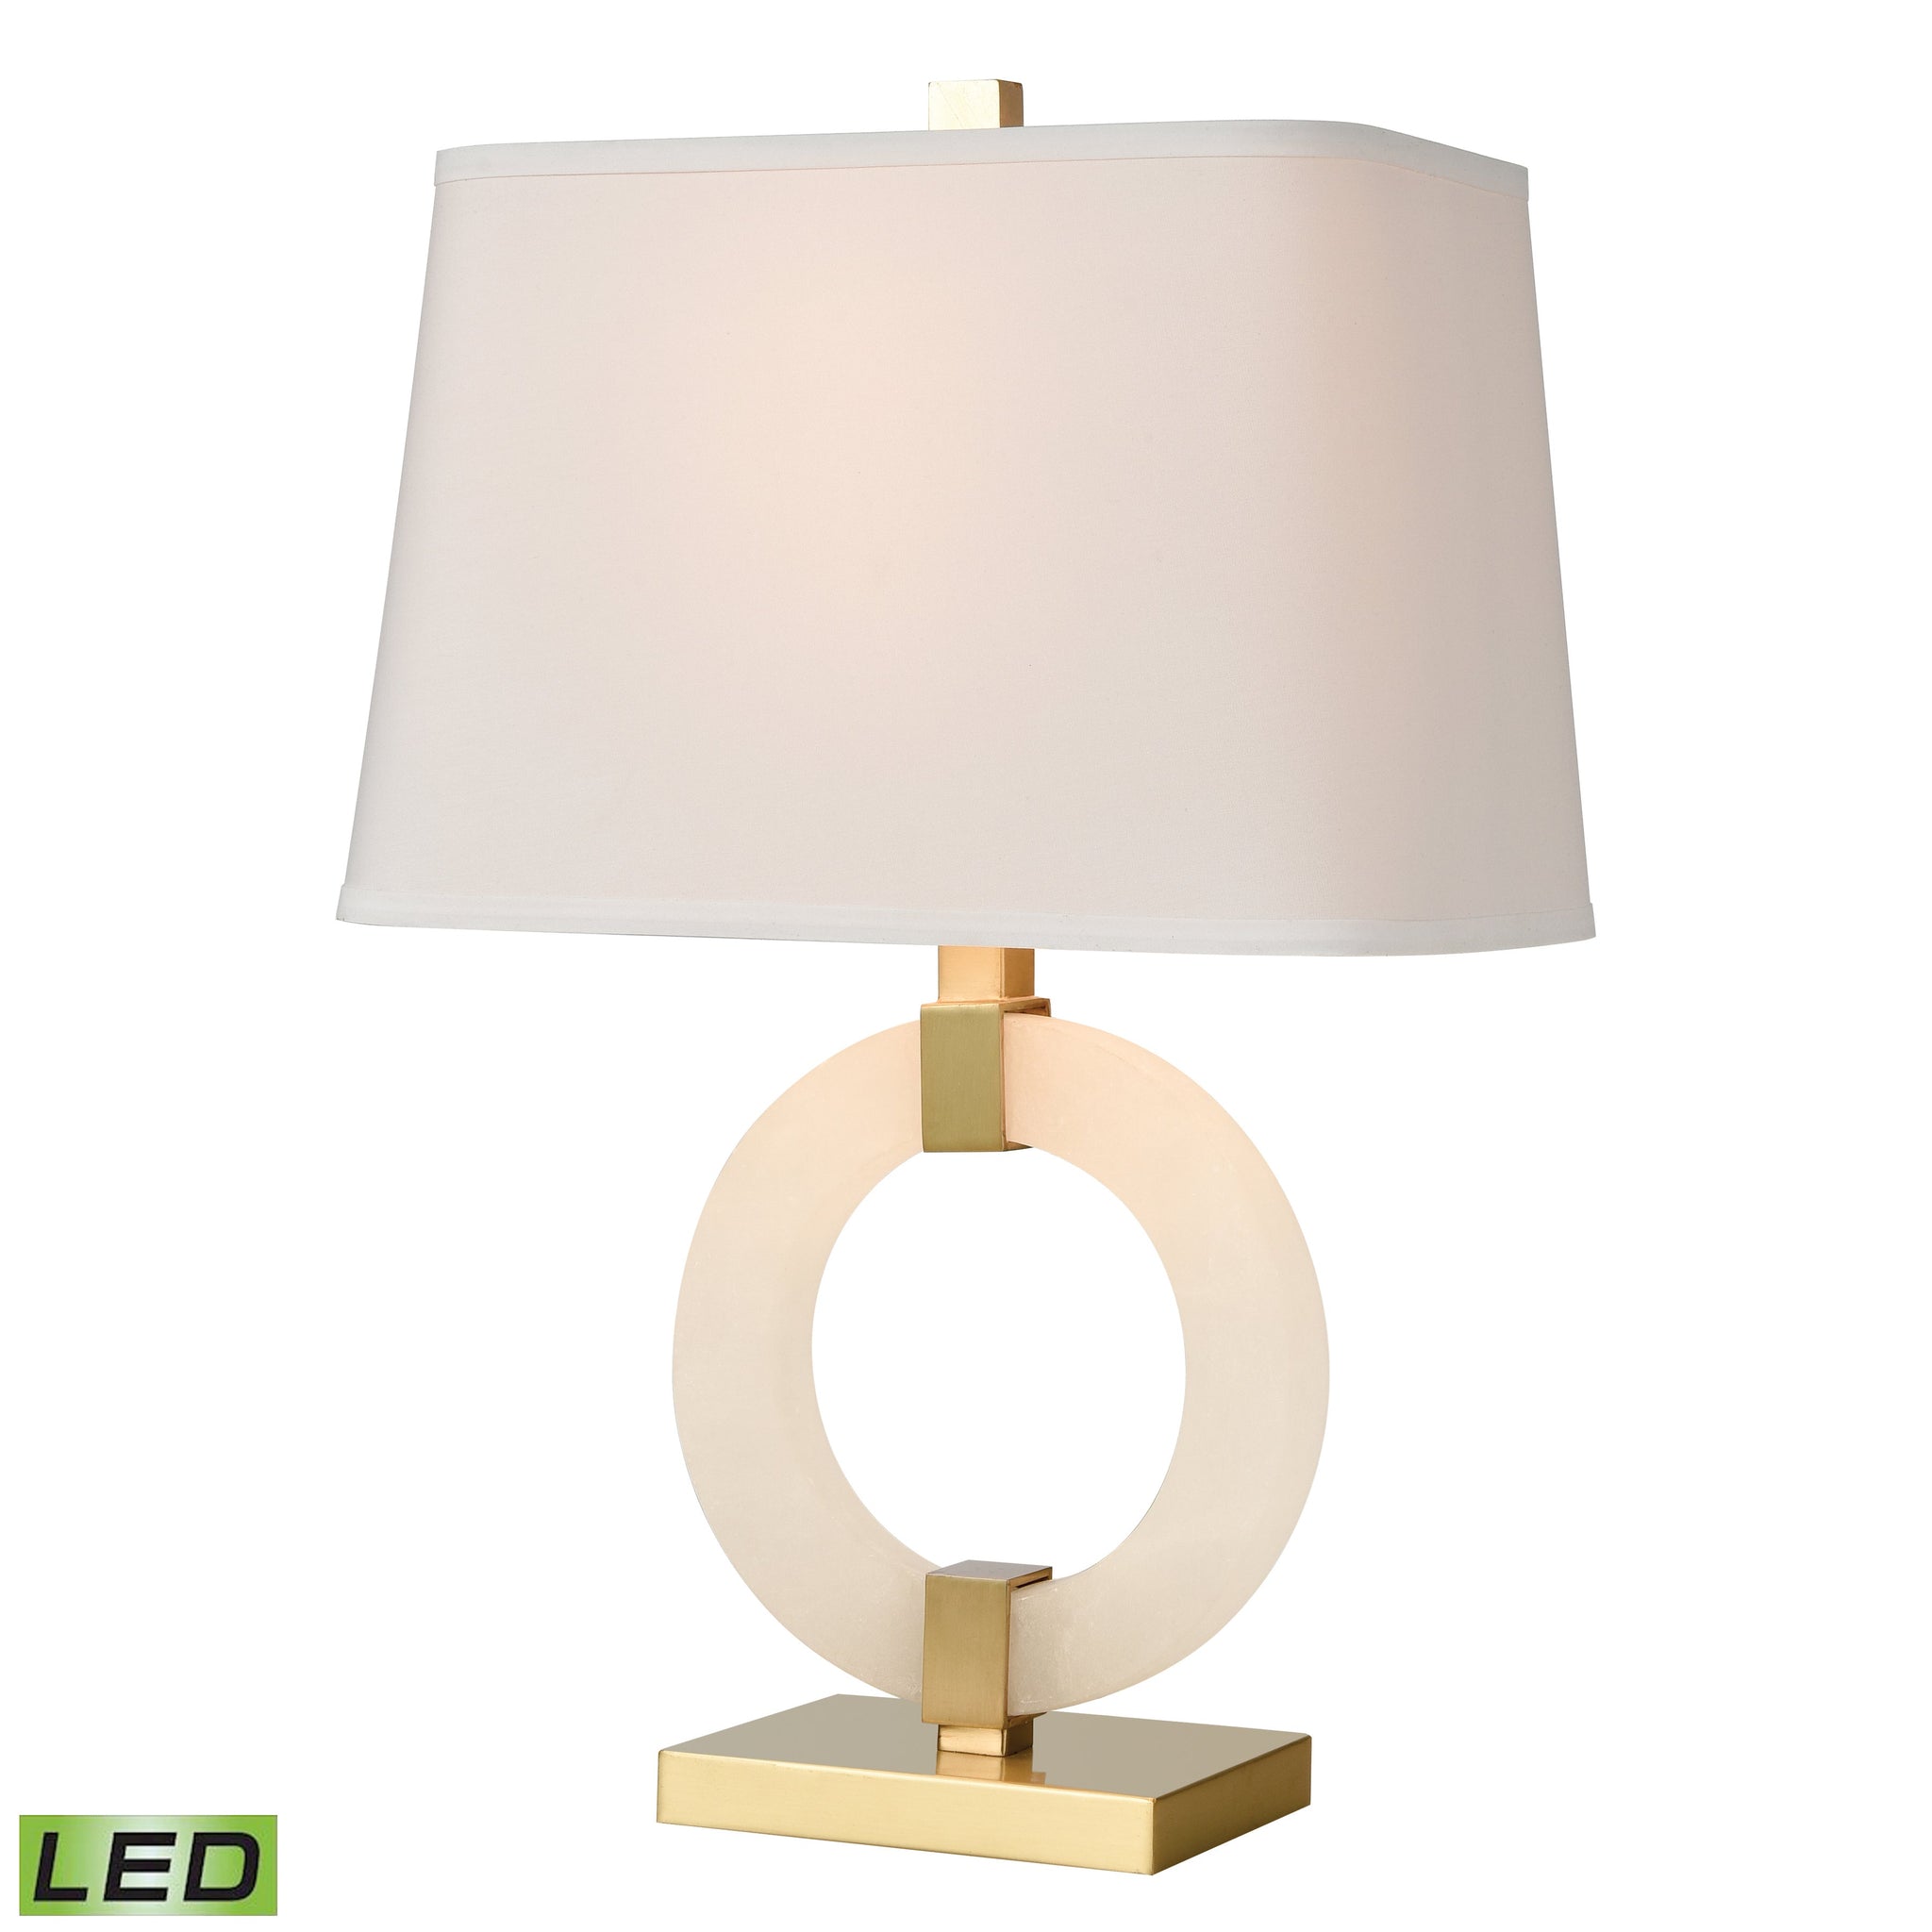 Envrion 23" High 1-Light Table Lamp